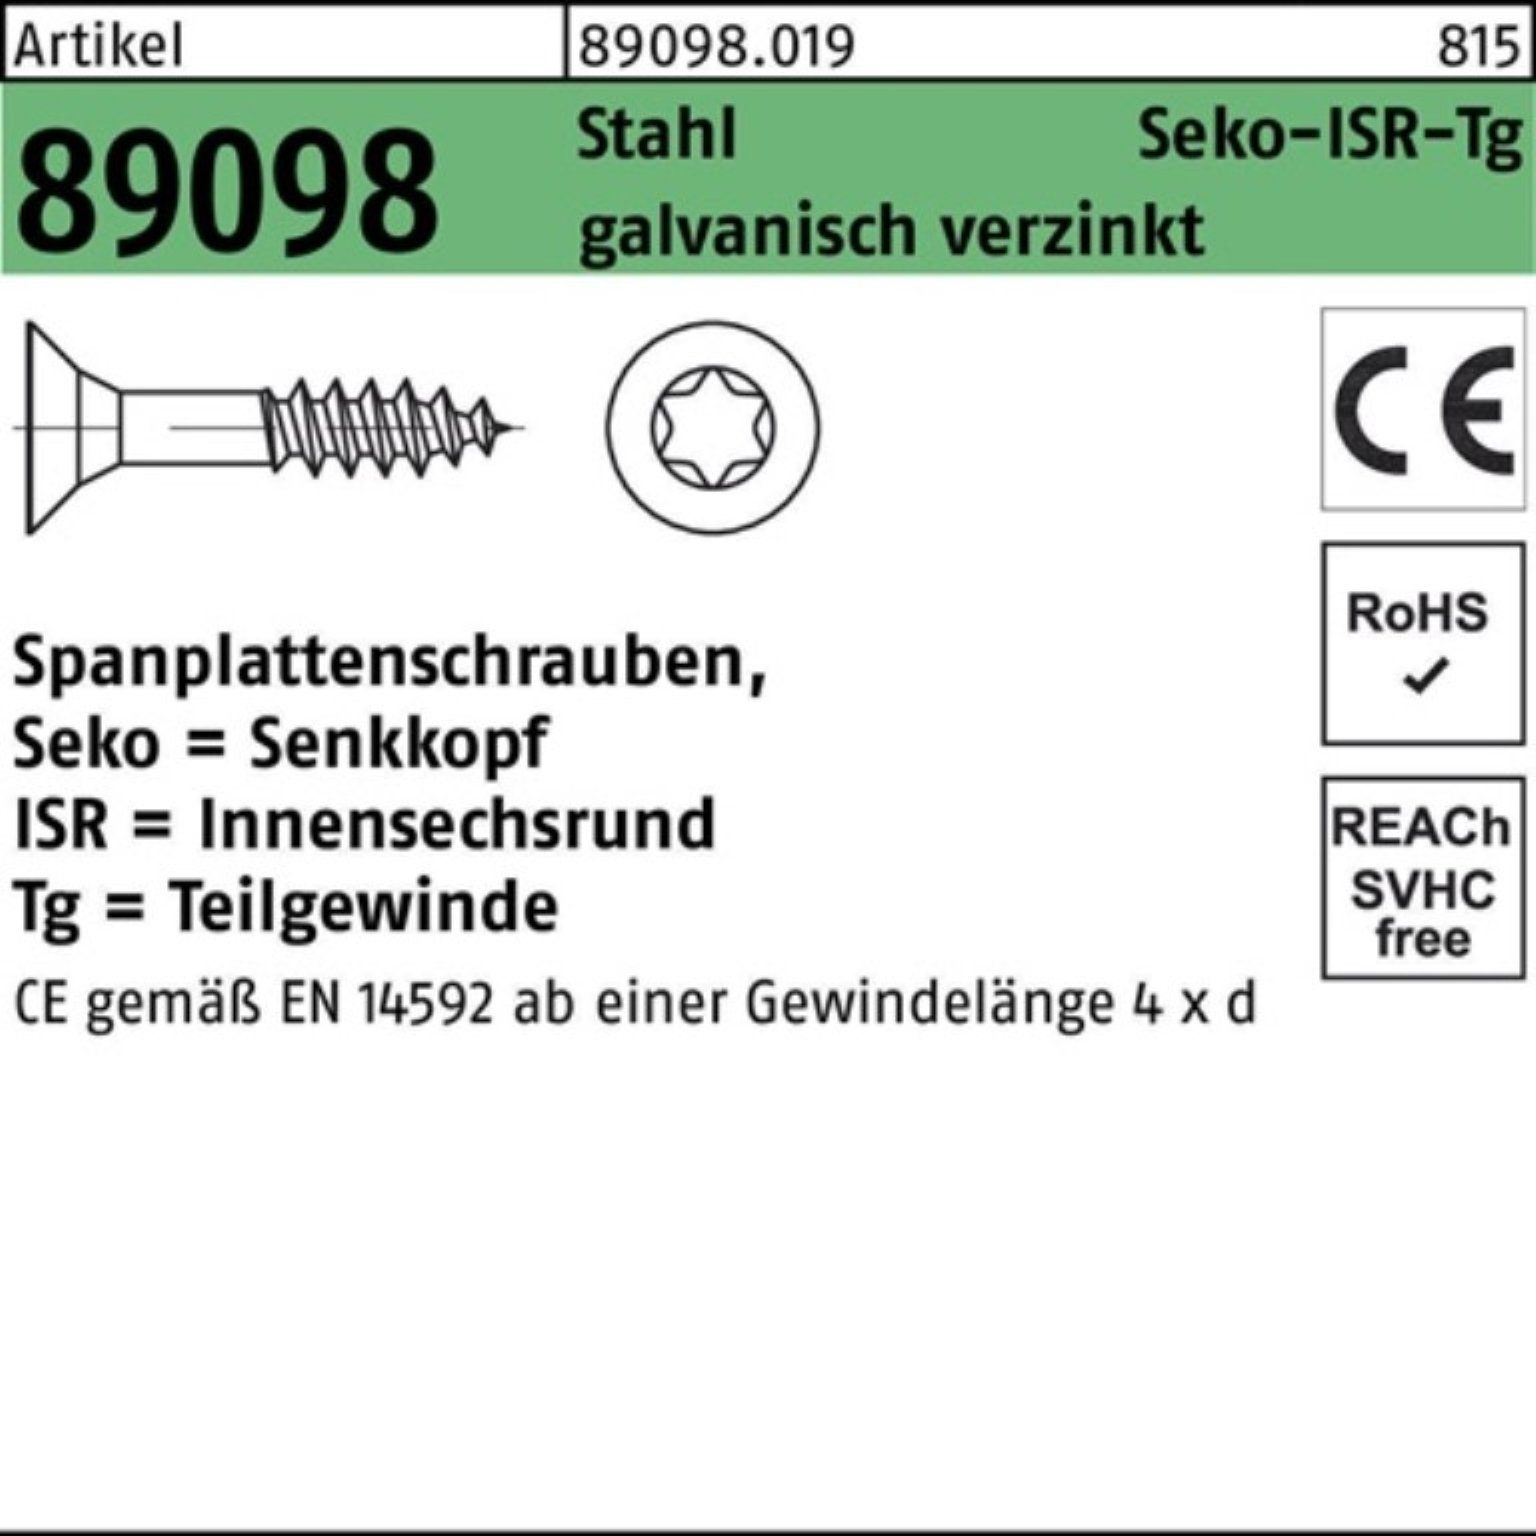 SEKO Reyher Stahl Spanplattenschraube 89098 TG g R ISR Spanplattenschraube 200er Pack 6x70/42-T30